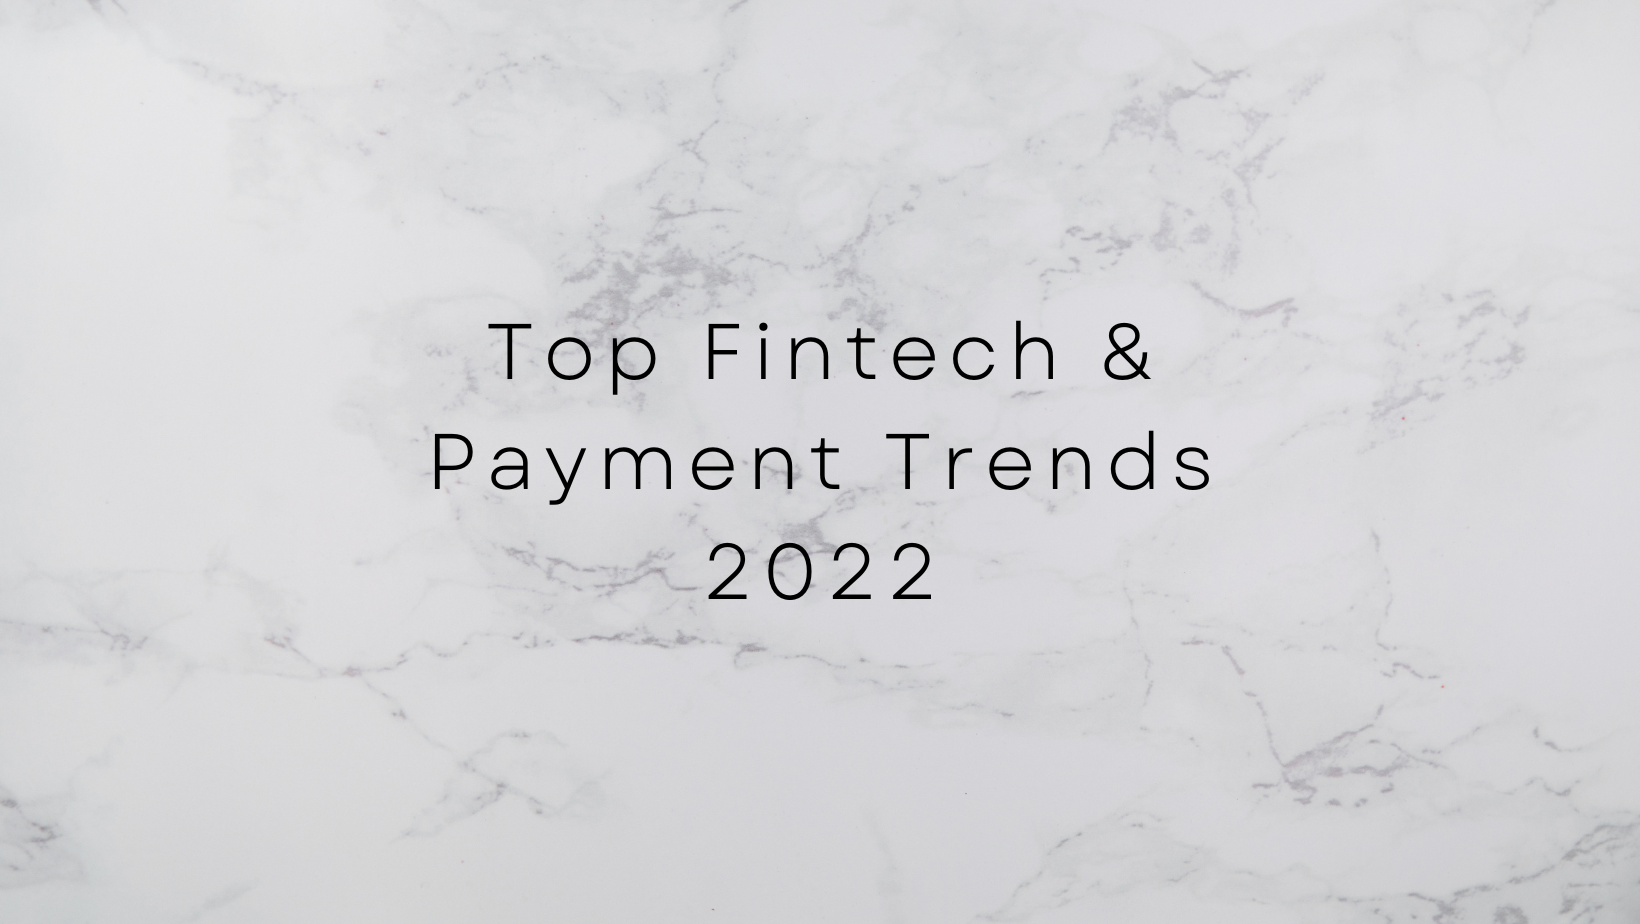 Top Fintech & Payment Trends 2022